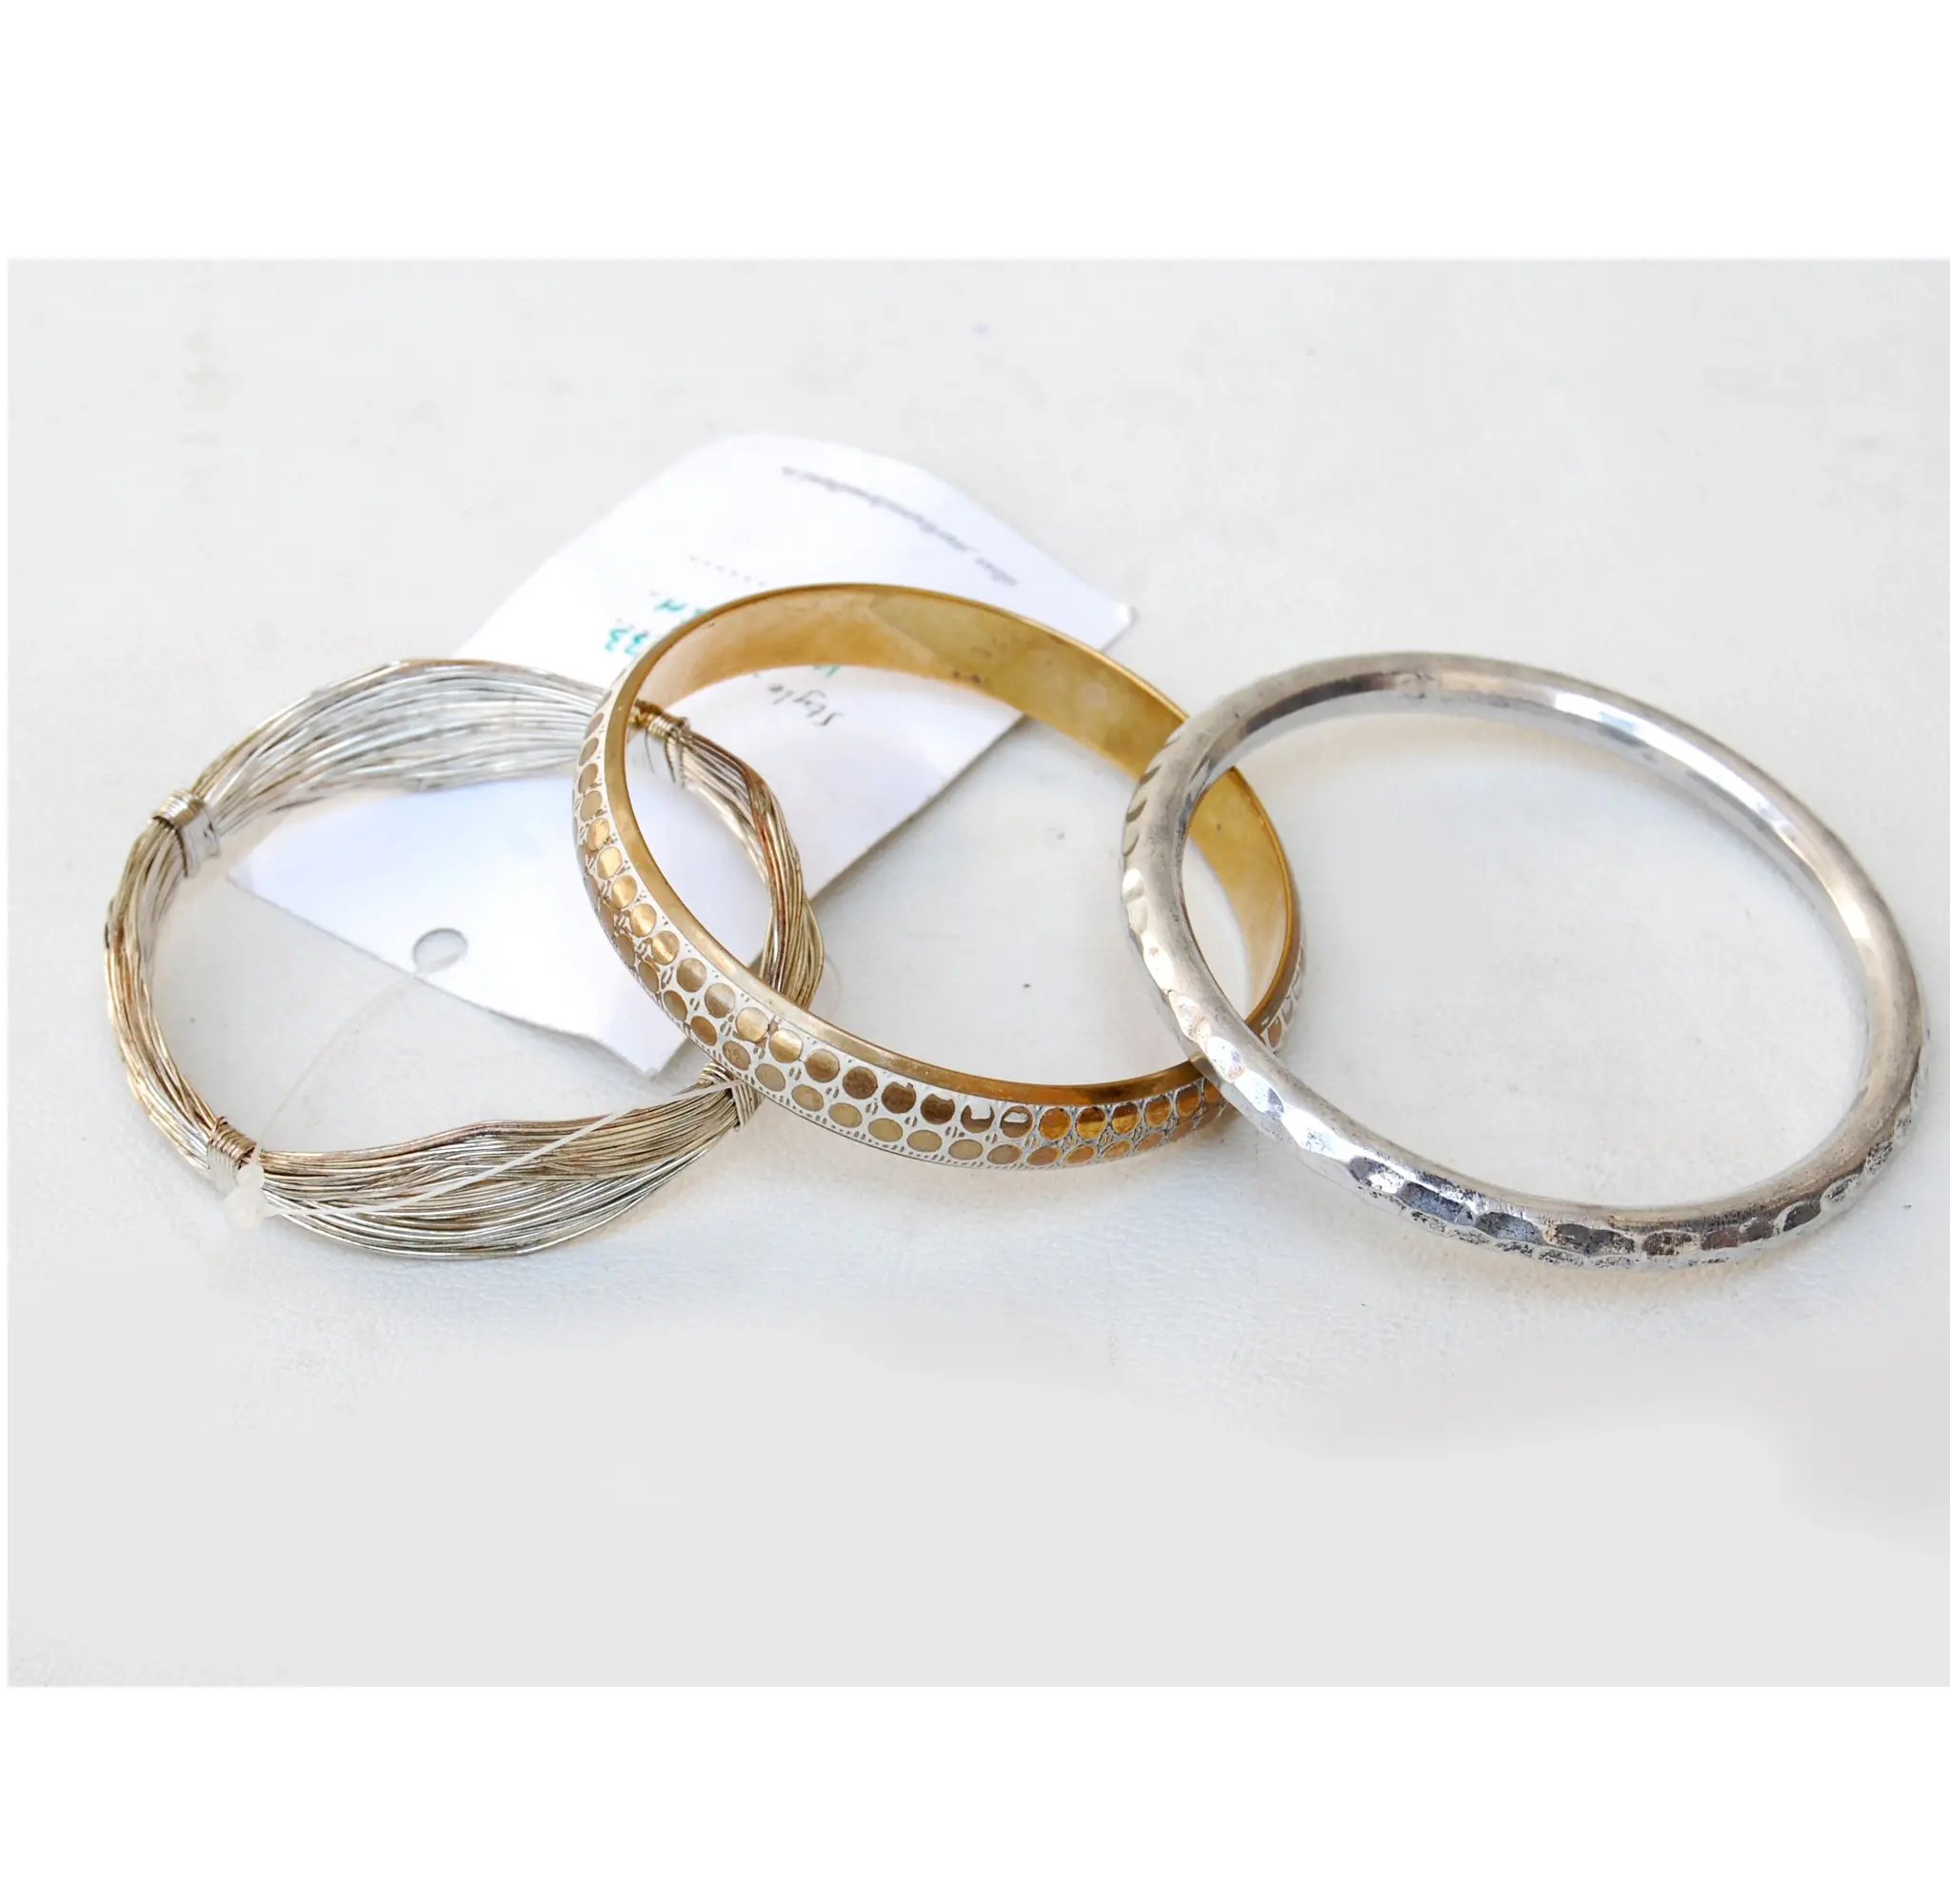 Bracelets en acier inoxydable pour mariage, bijoux ethniques indiens et de mode pour femmes et filles, Bracelet pour femmes et filles